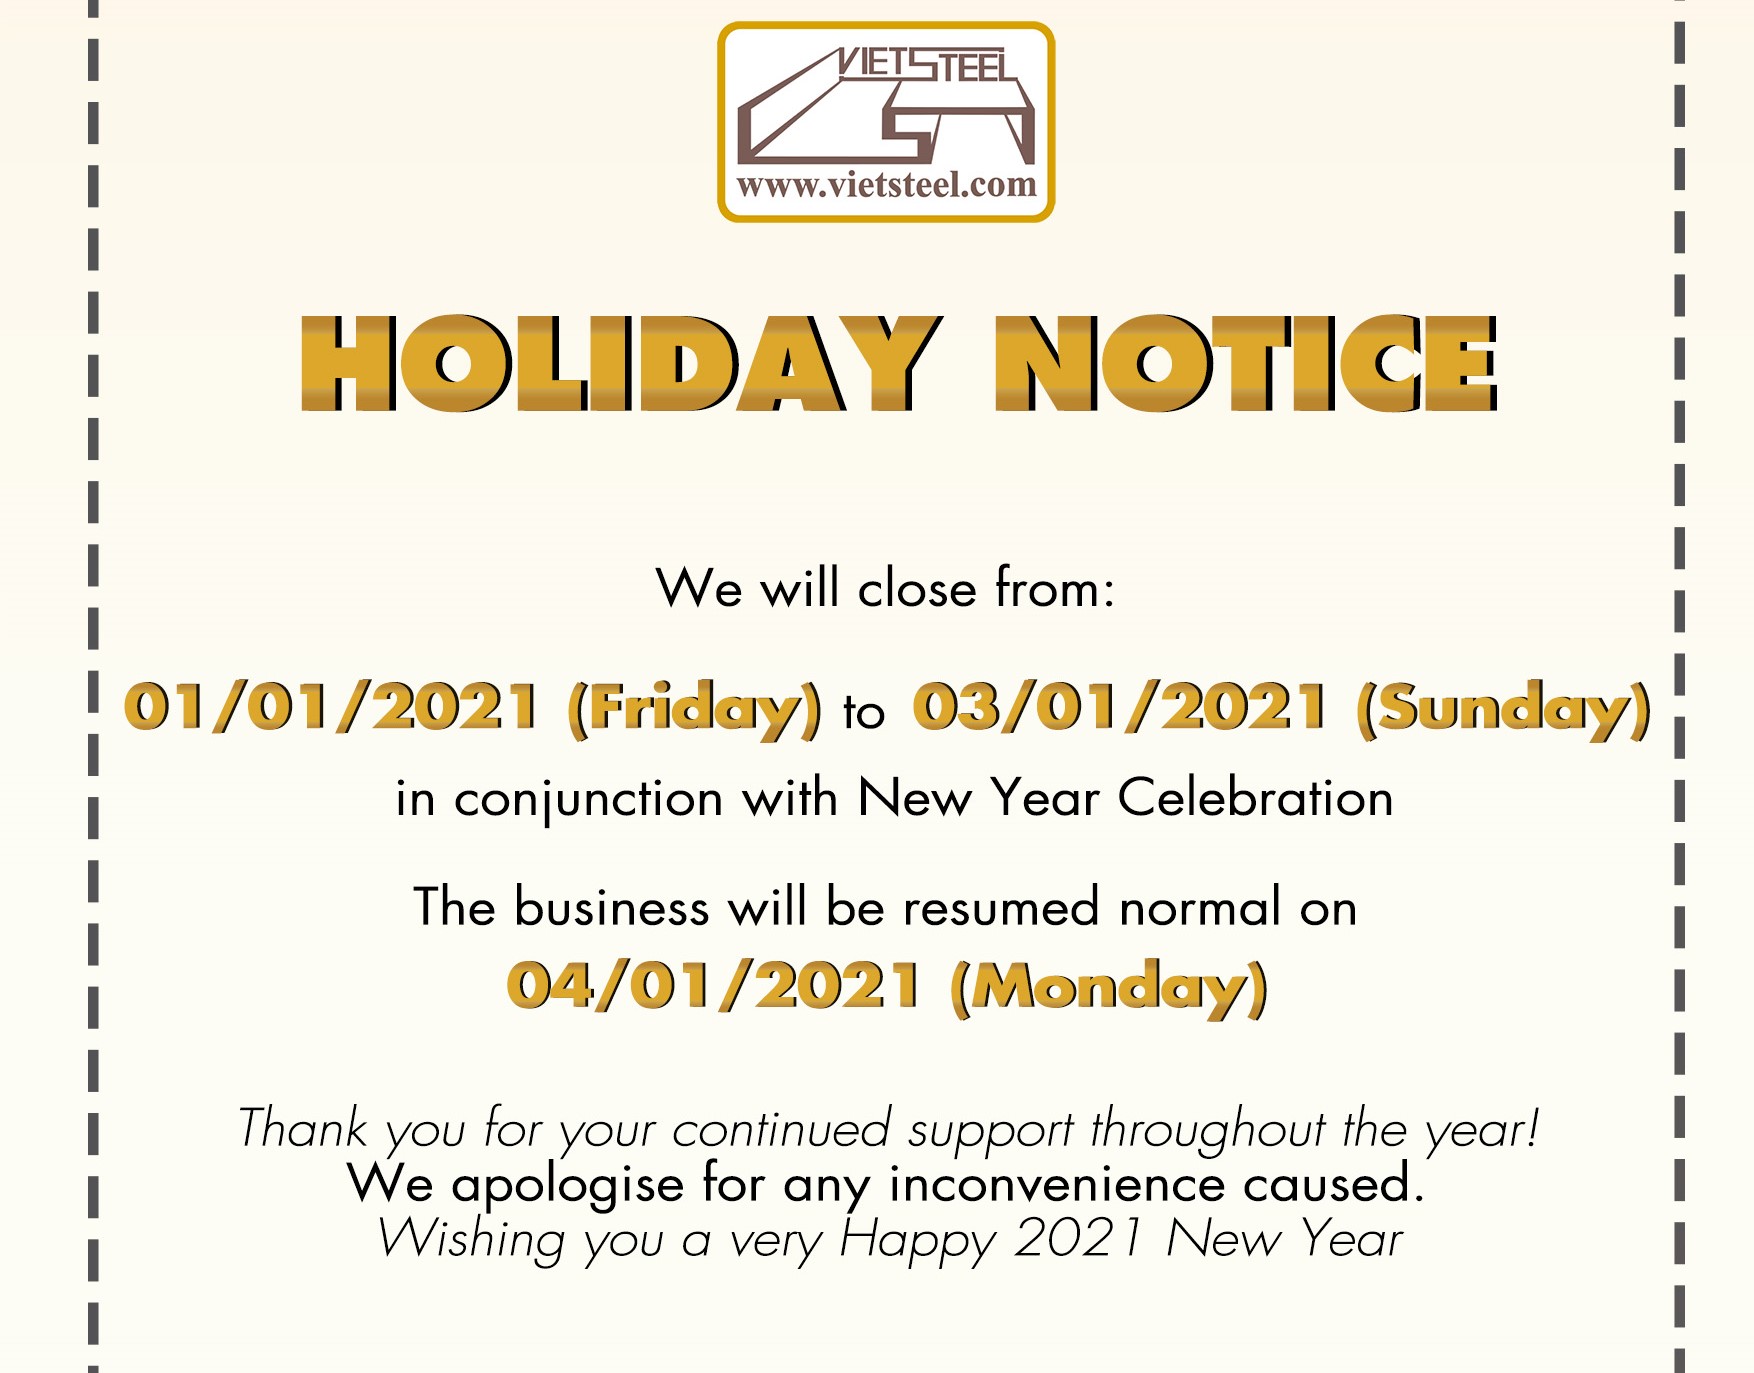 Vietsteel Holiday notice [New year 2021]